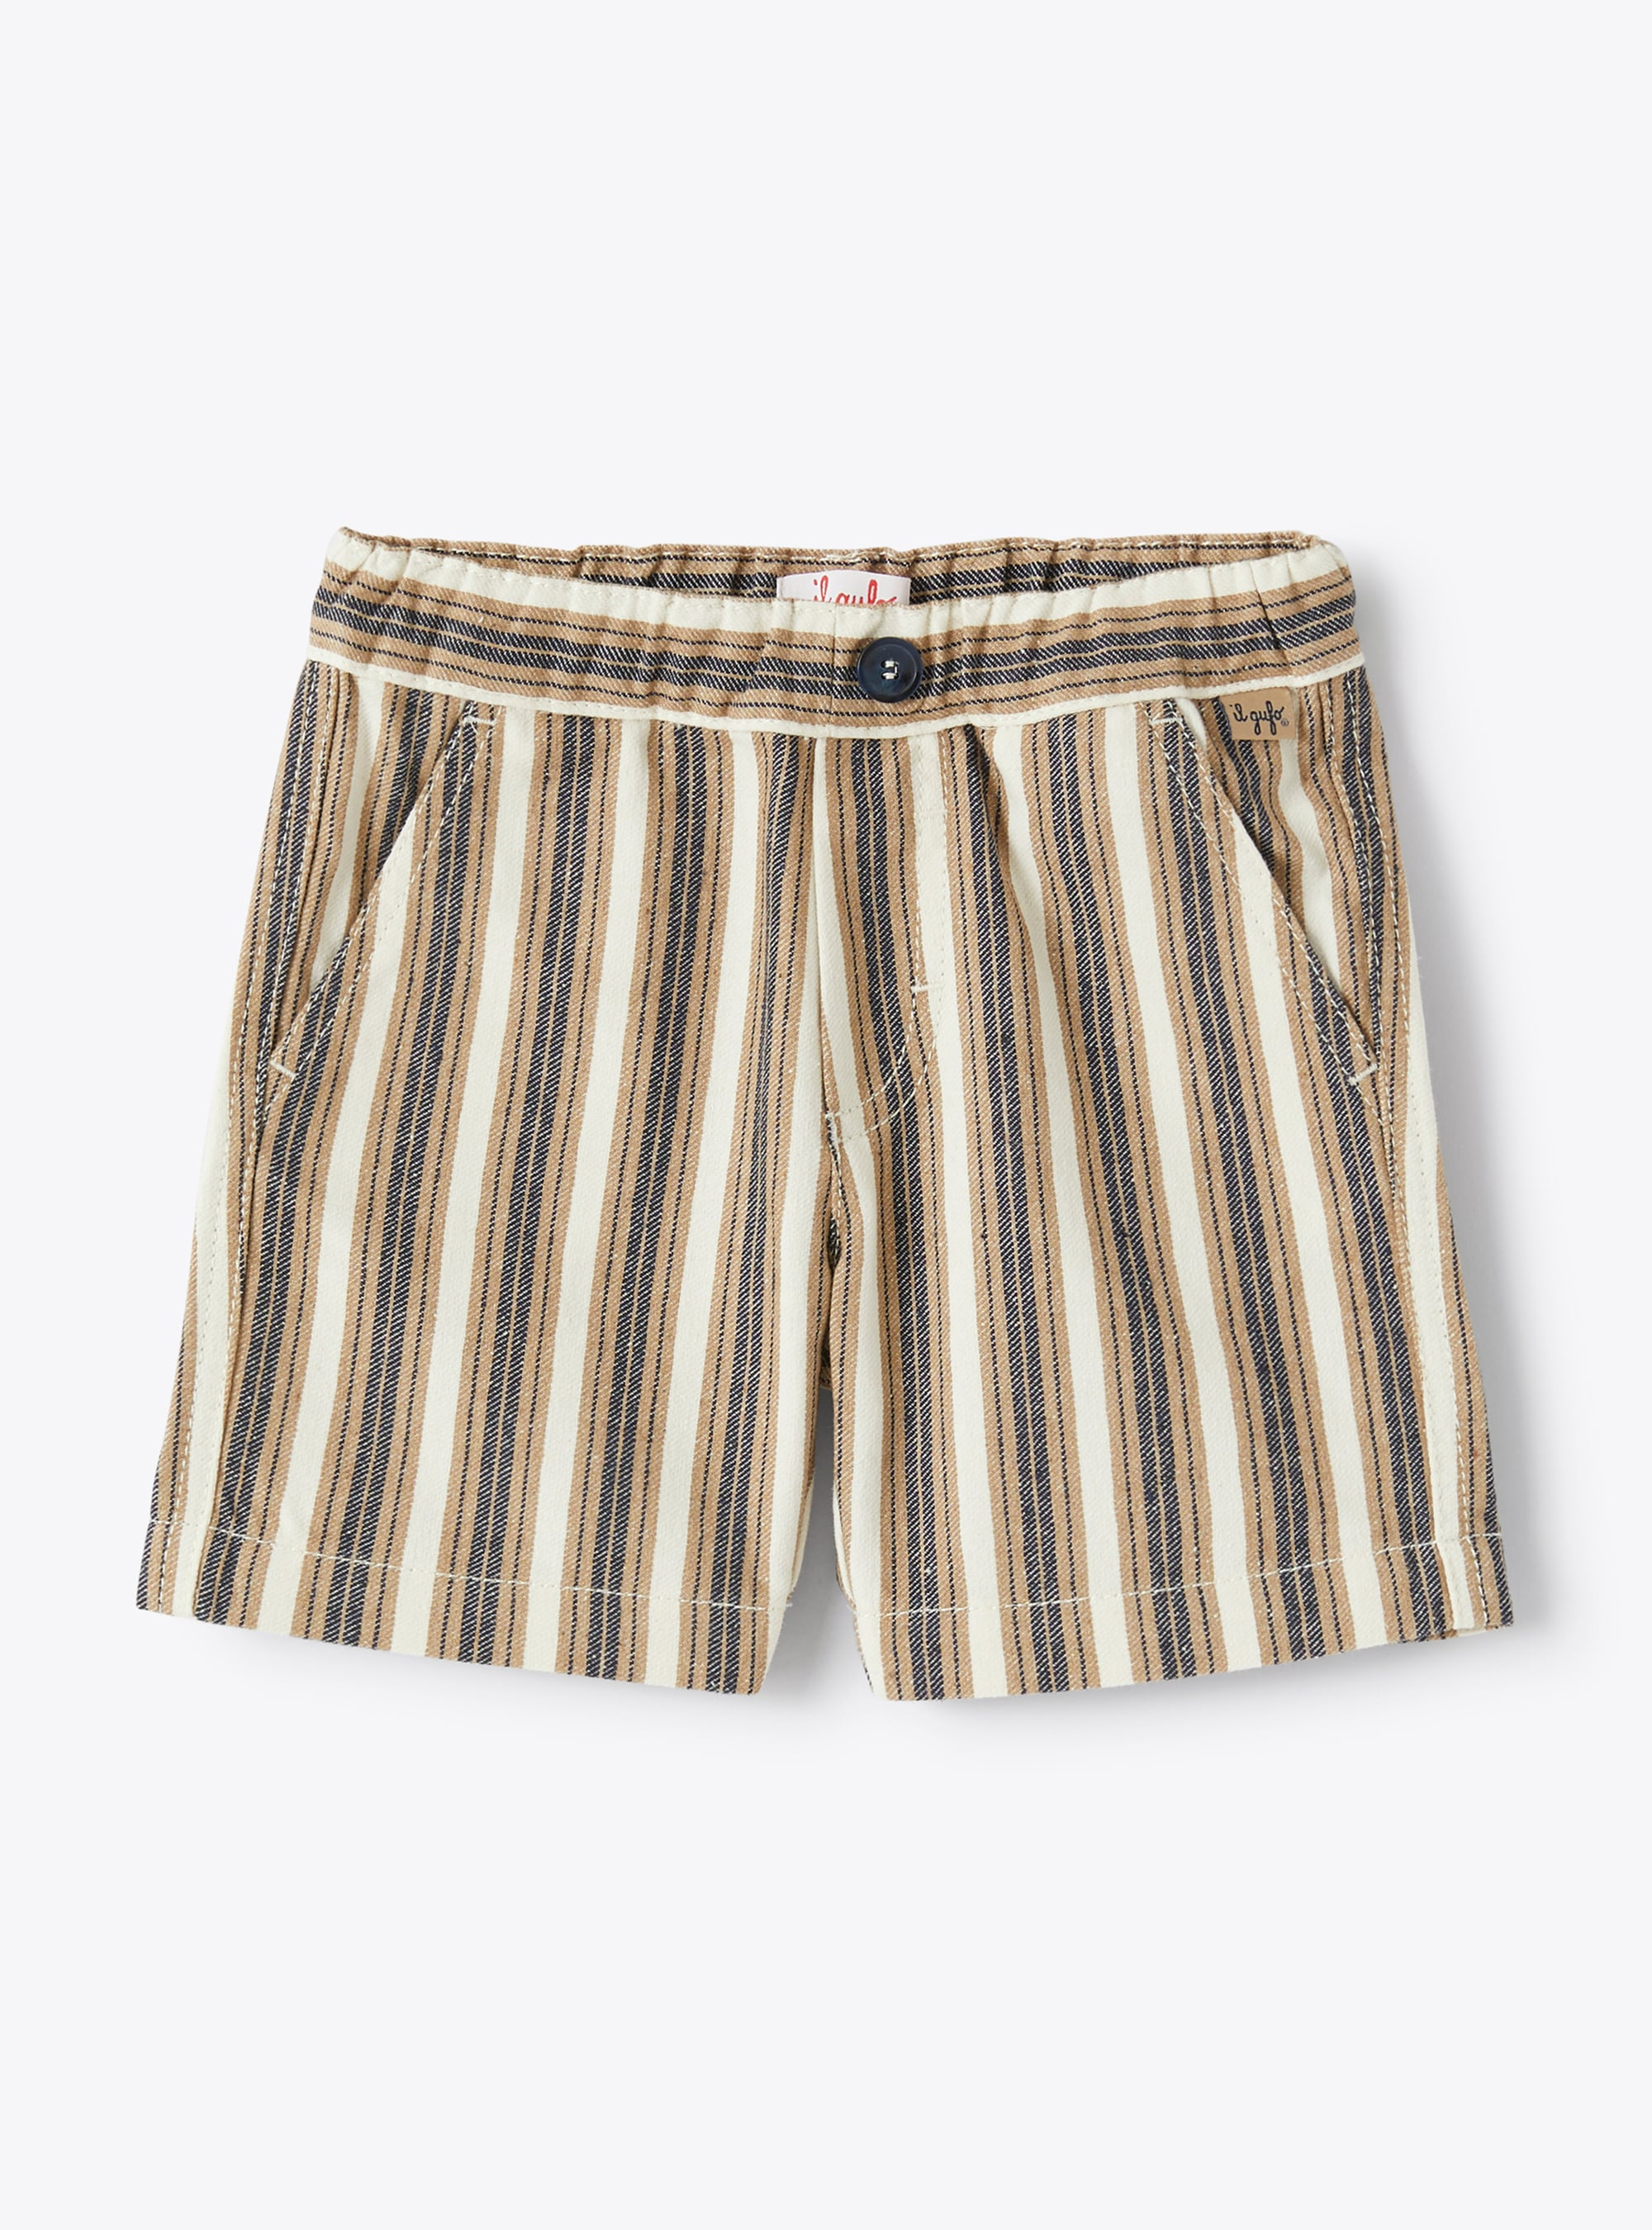 Bermuda shorts in blue-and-beige stripes - Beige | Il Gufo